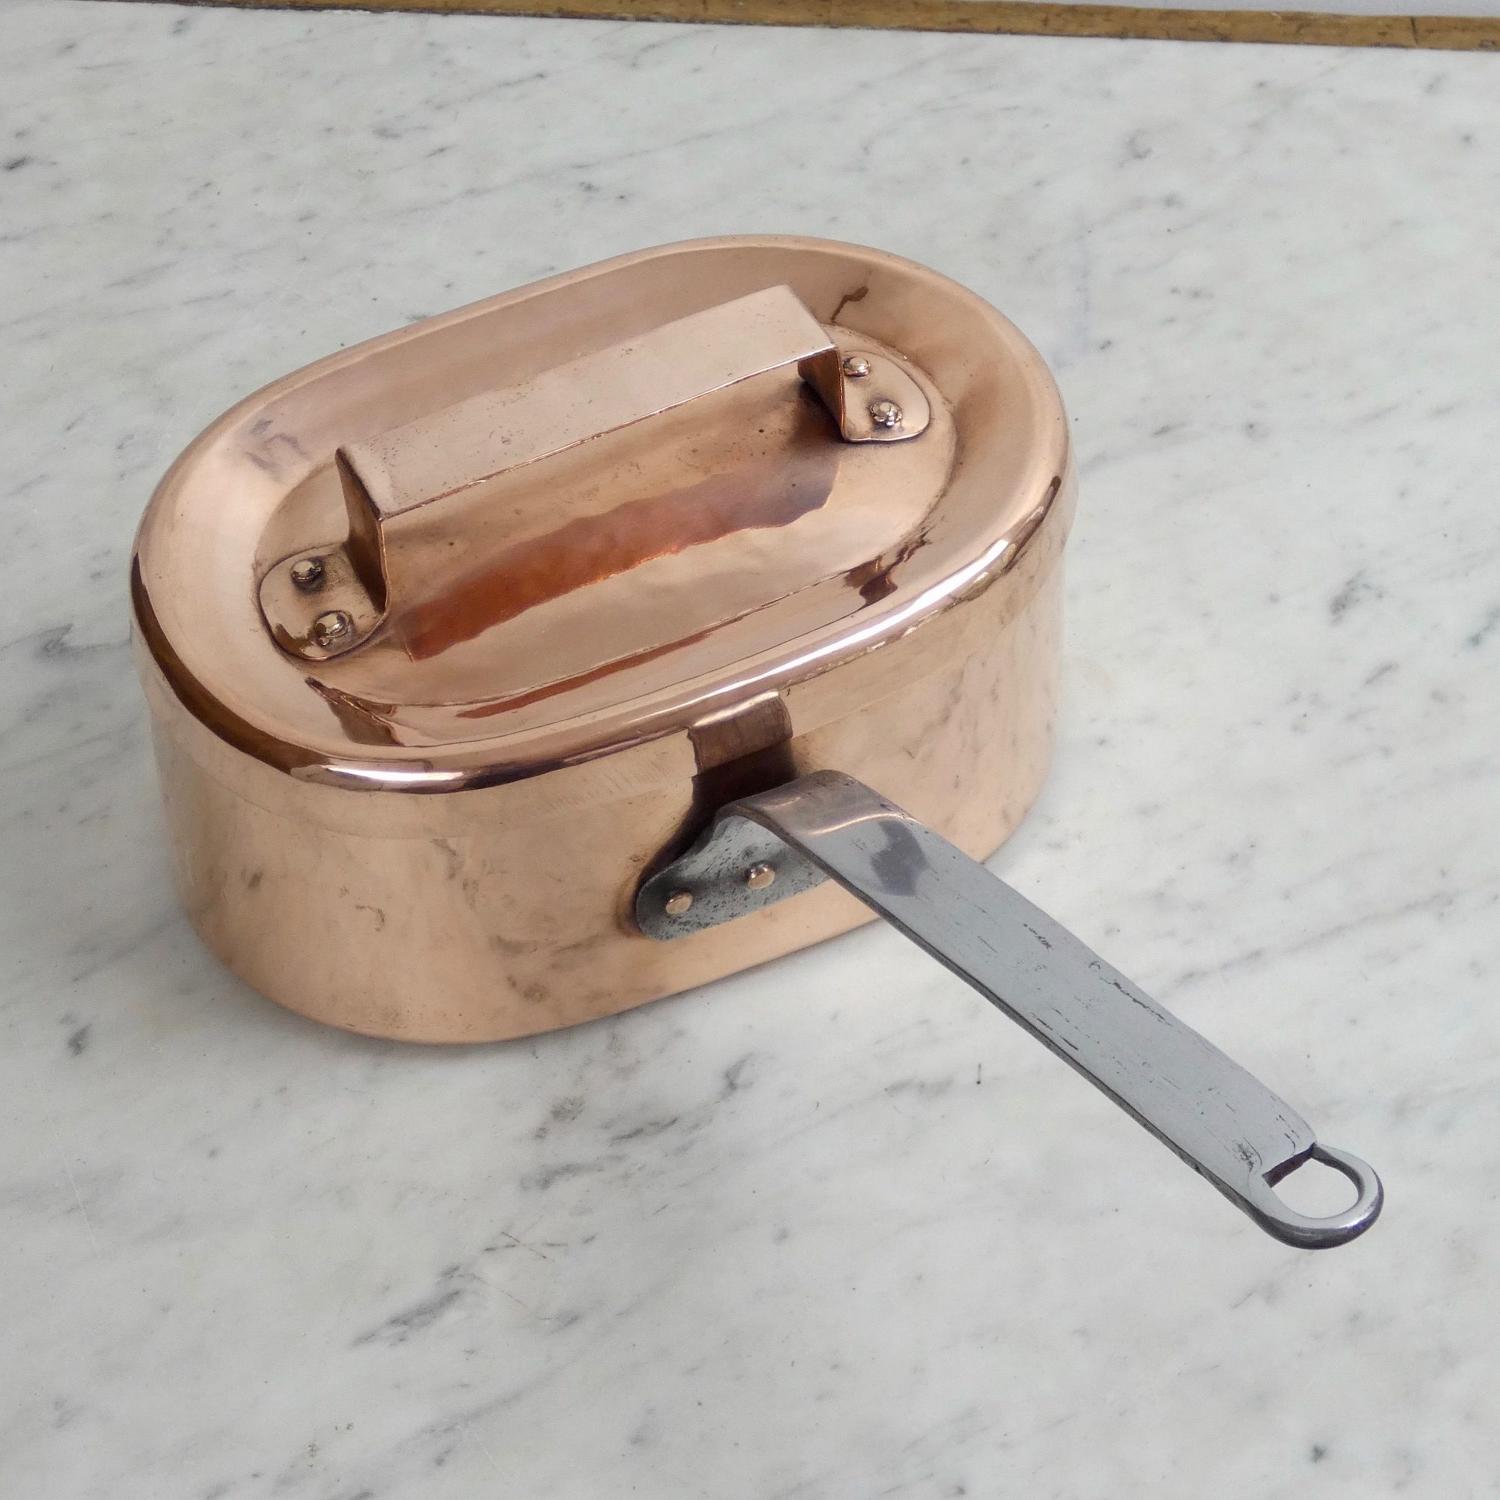 Oval copper saucepan